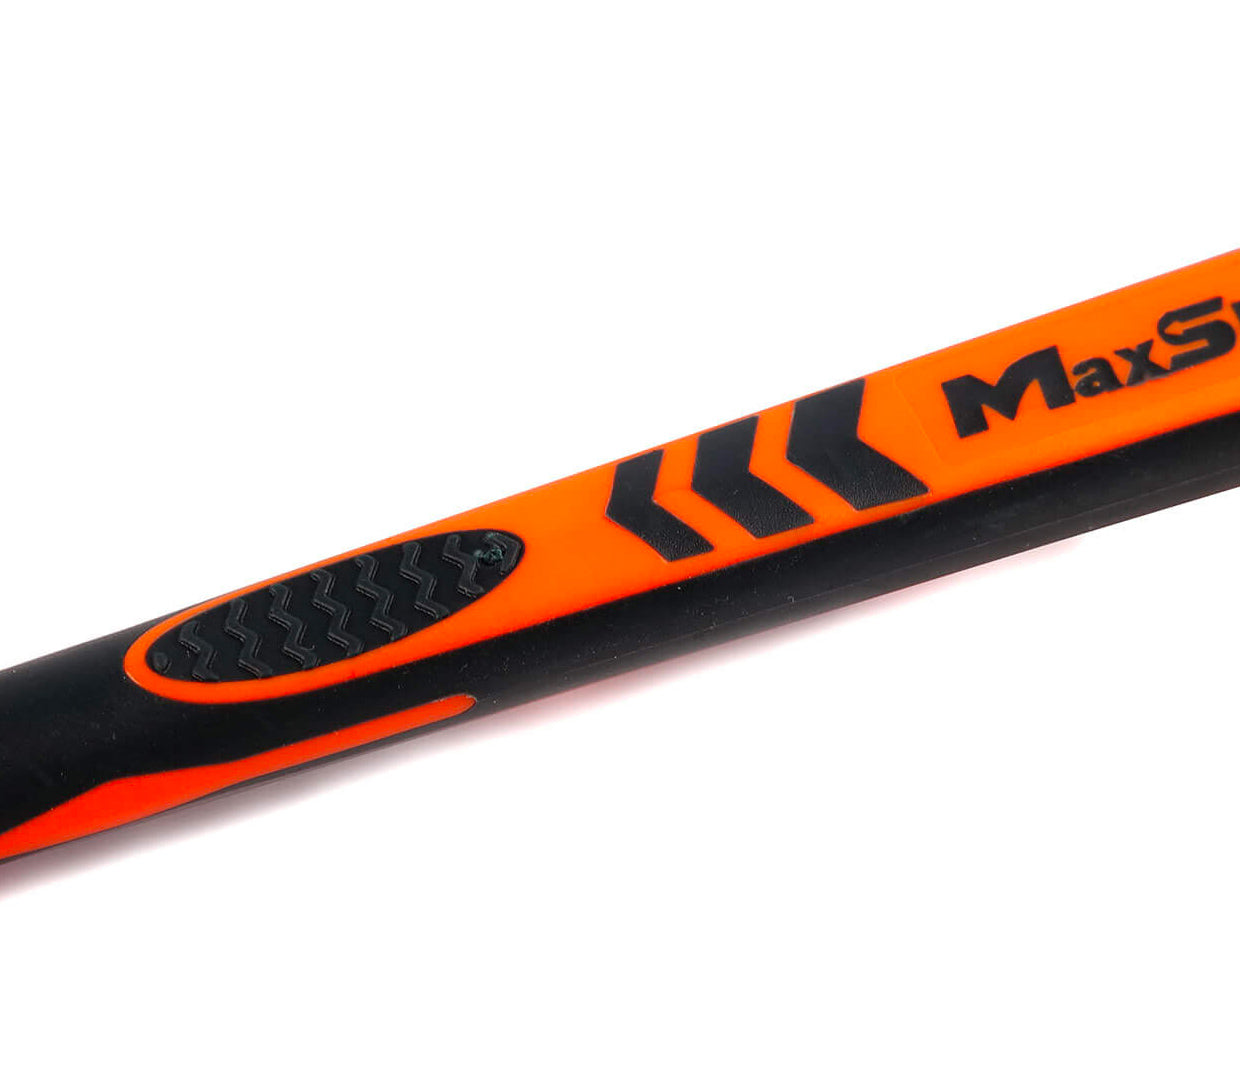 Maxshine Detailing Brush - Boar's Hair 12mm